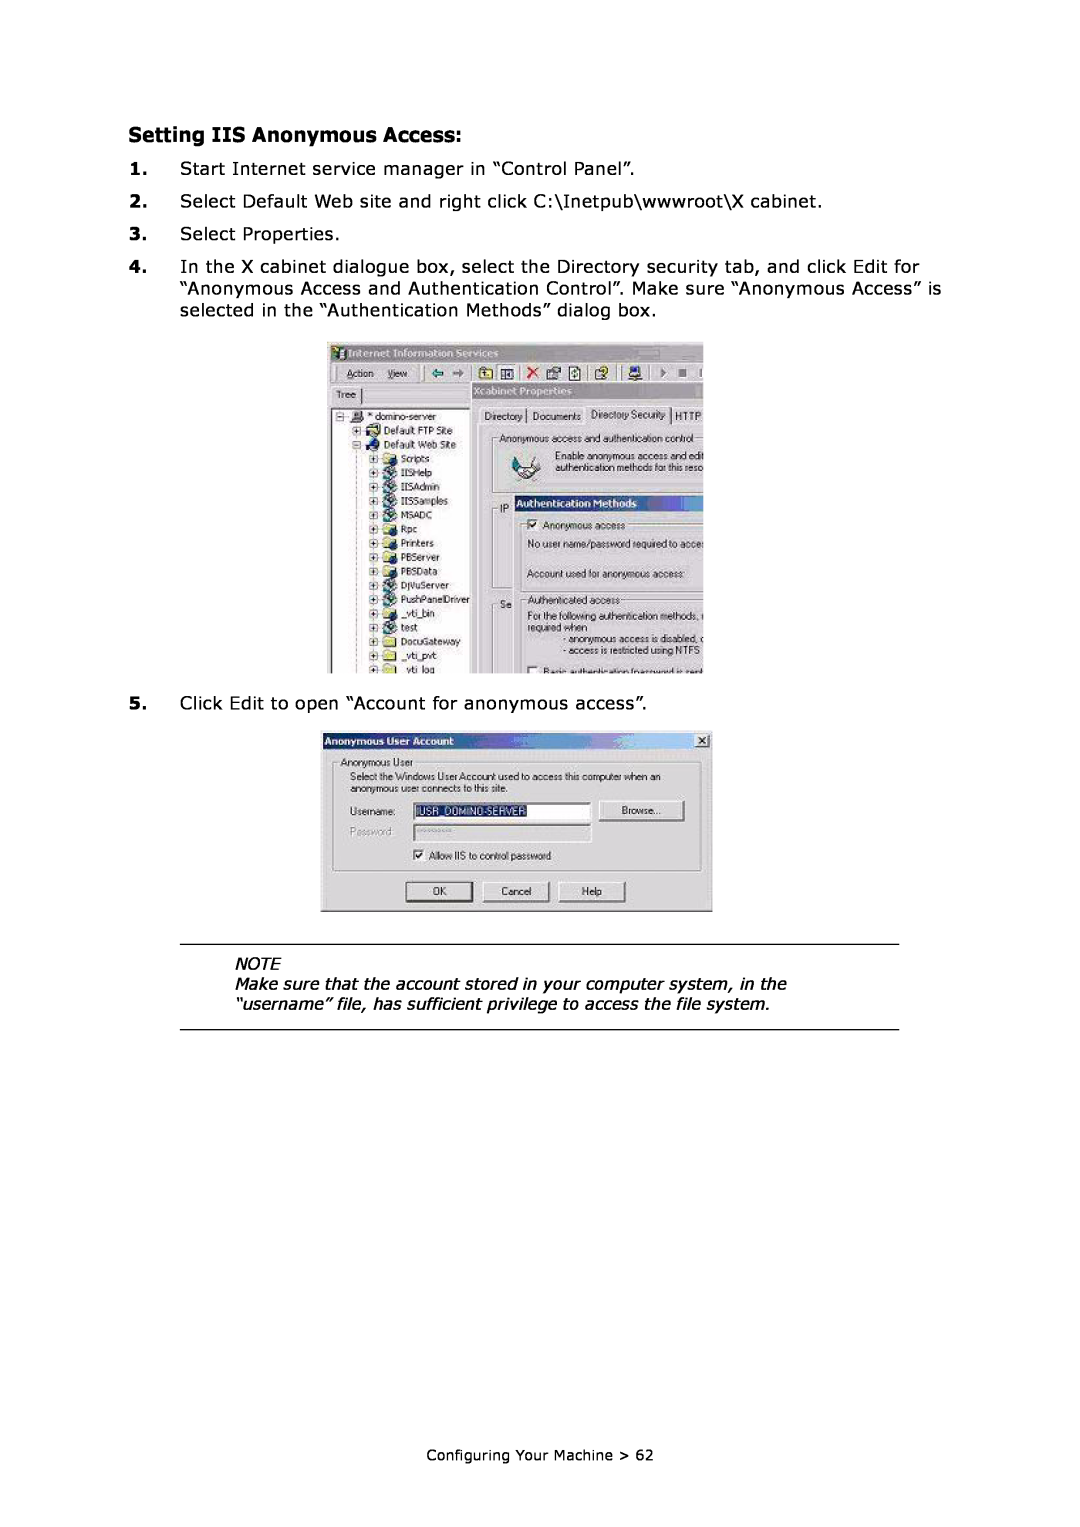 Oki MC860n MFP manual Setting IIS Anonymous Access 